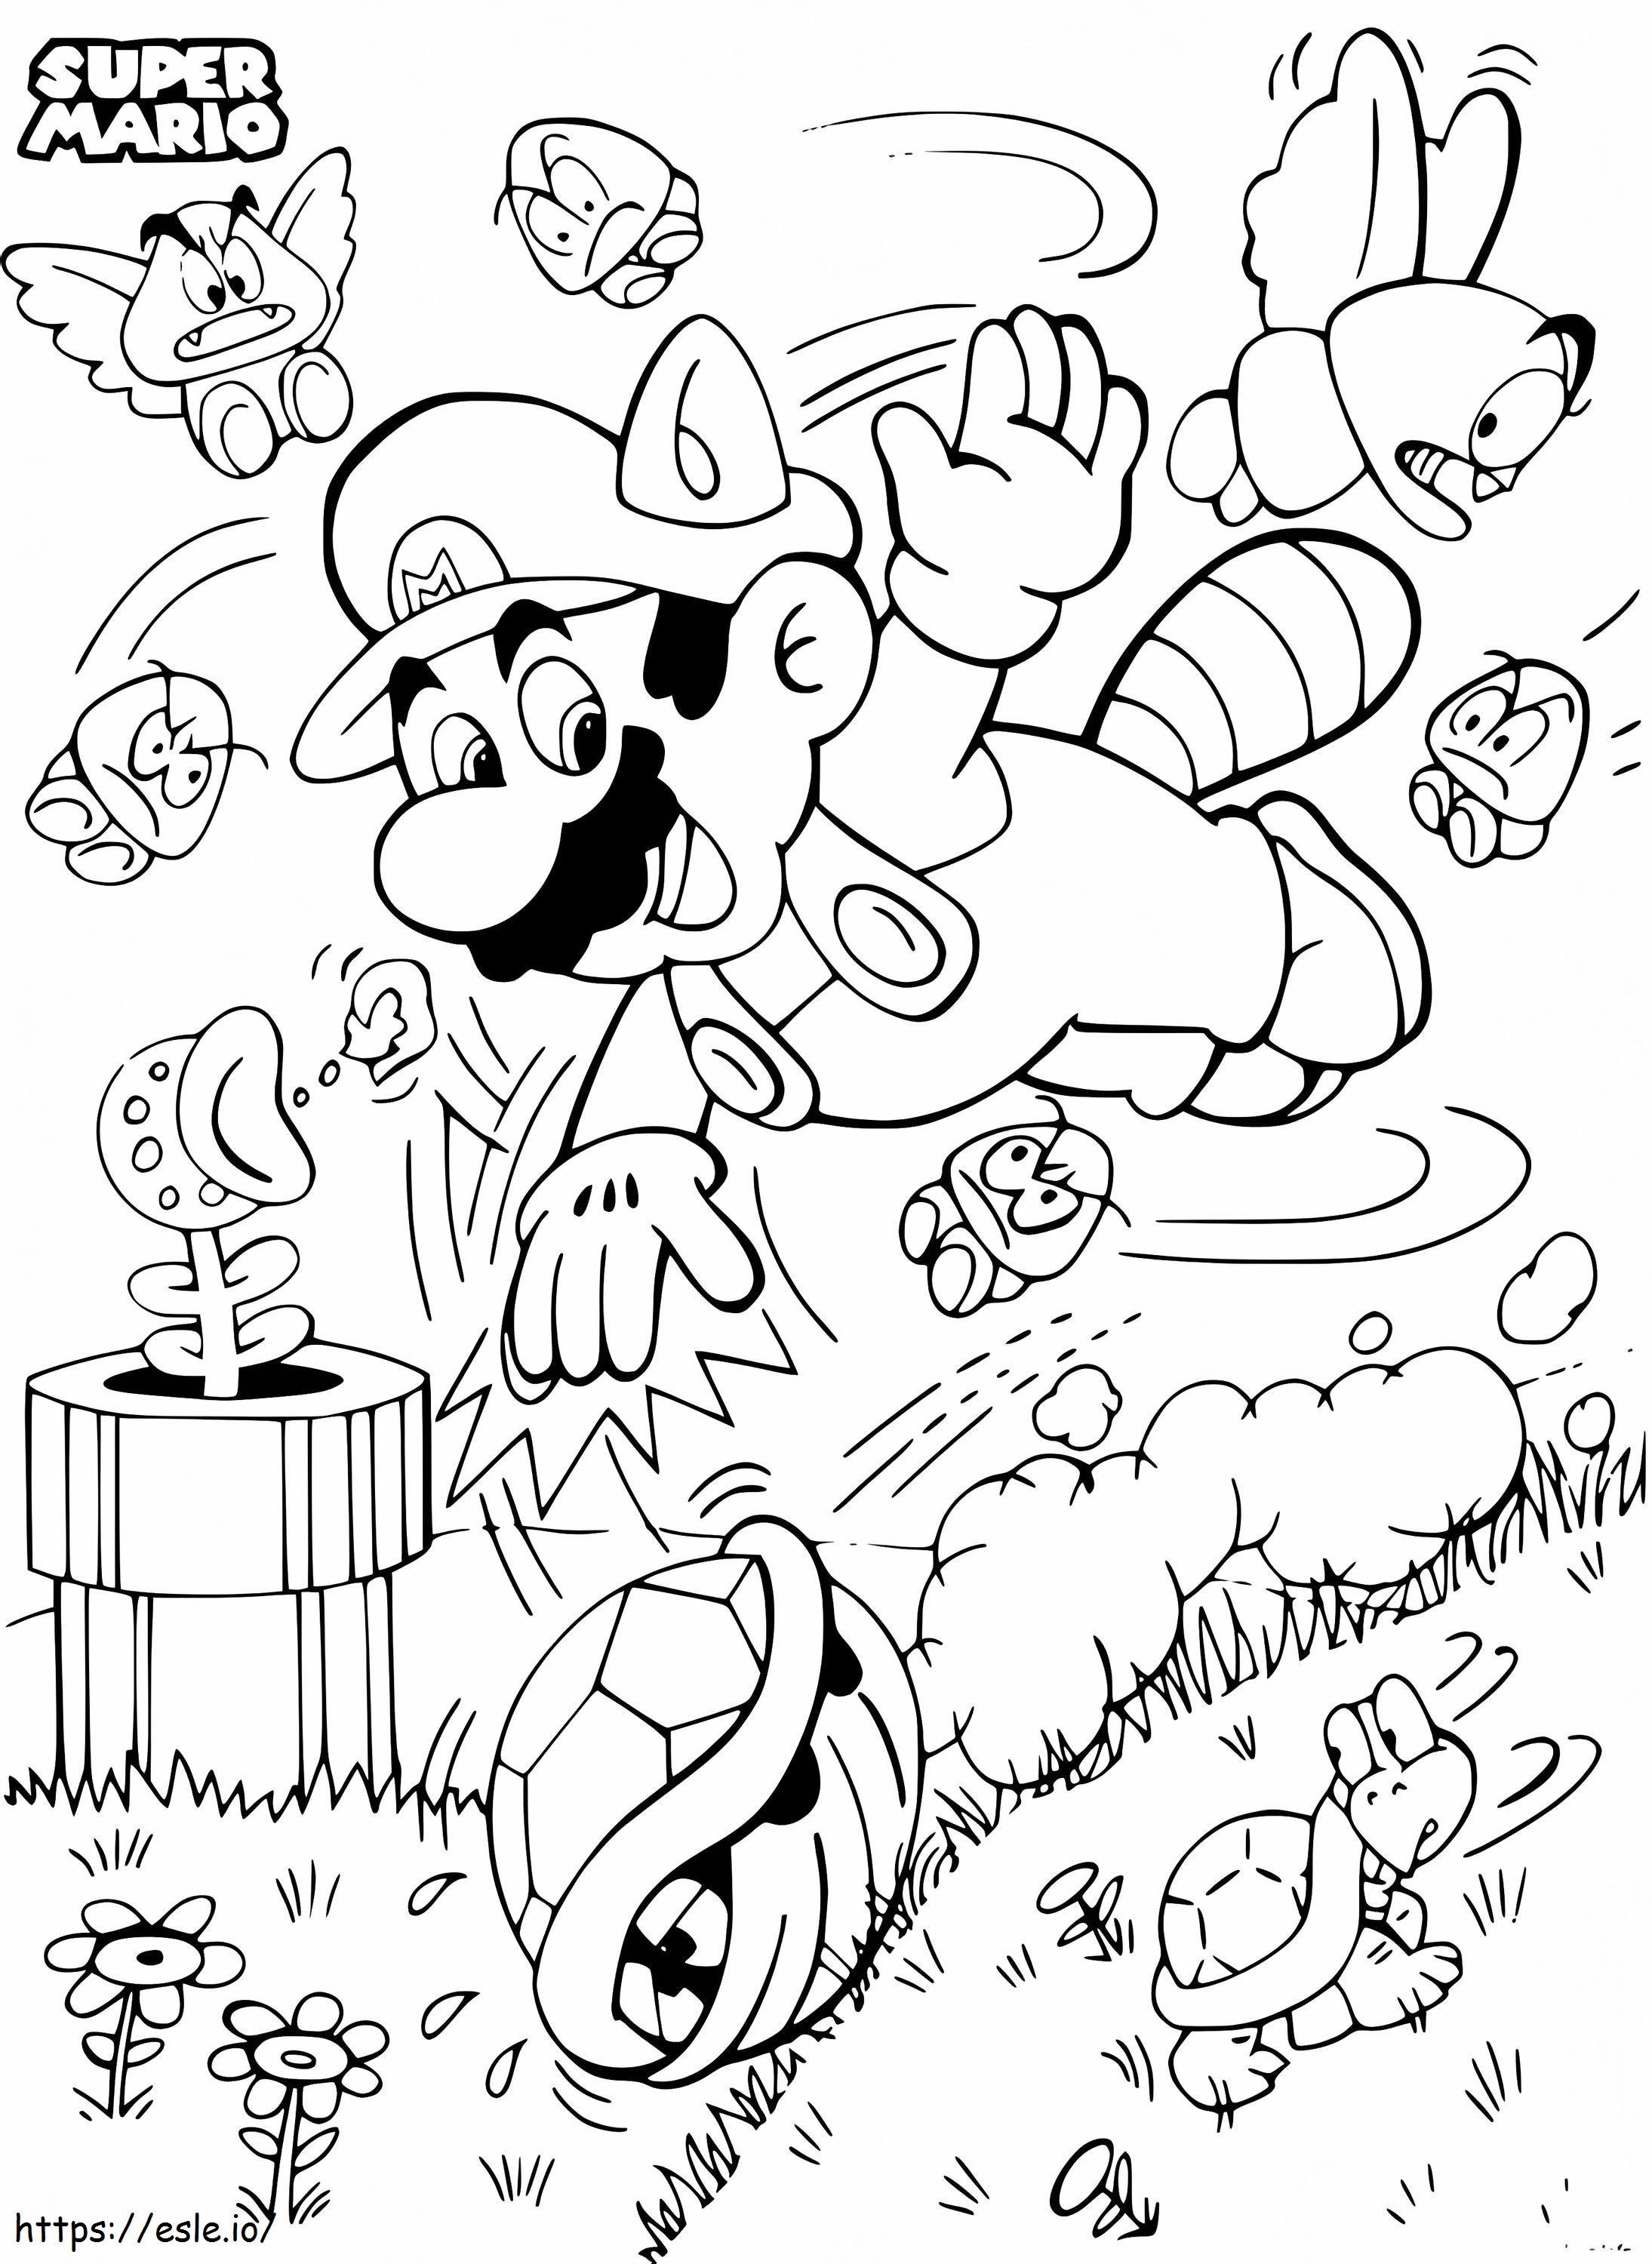 Super Mario Bros para colorir